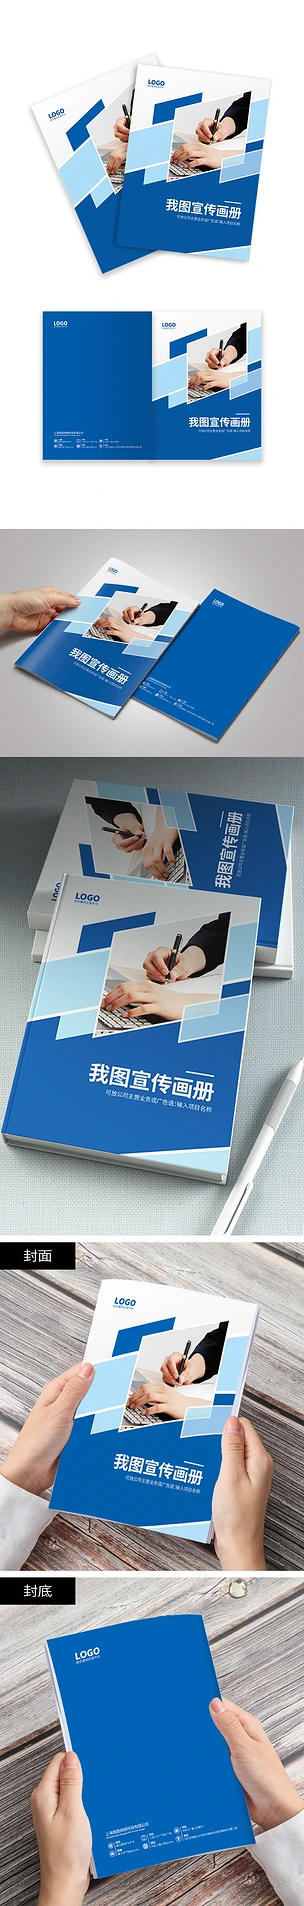 蓝色简约大气科技公司企业产品画册封面设计